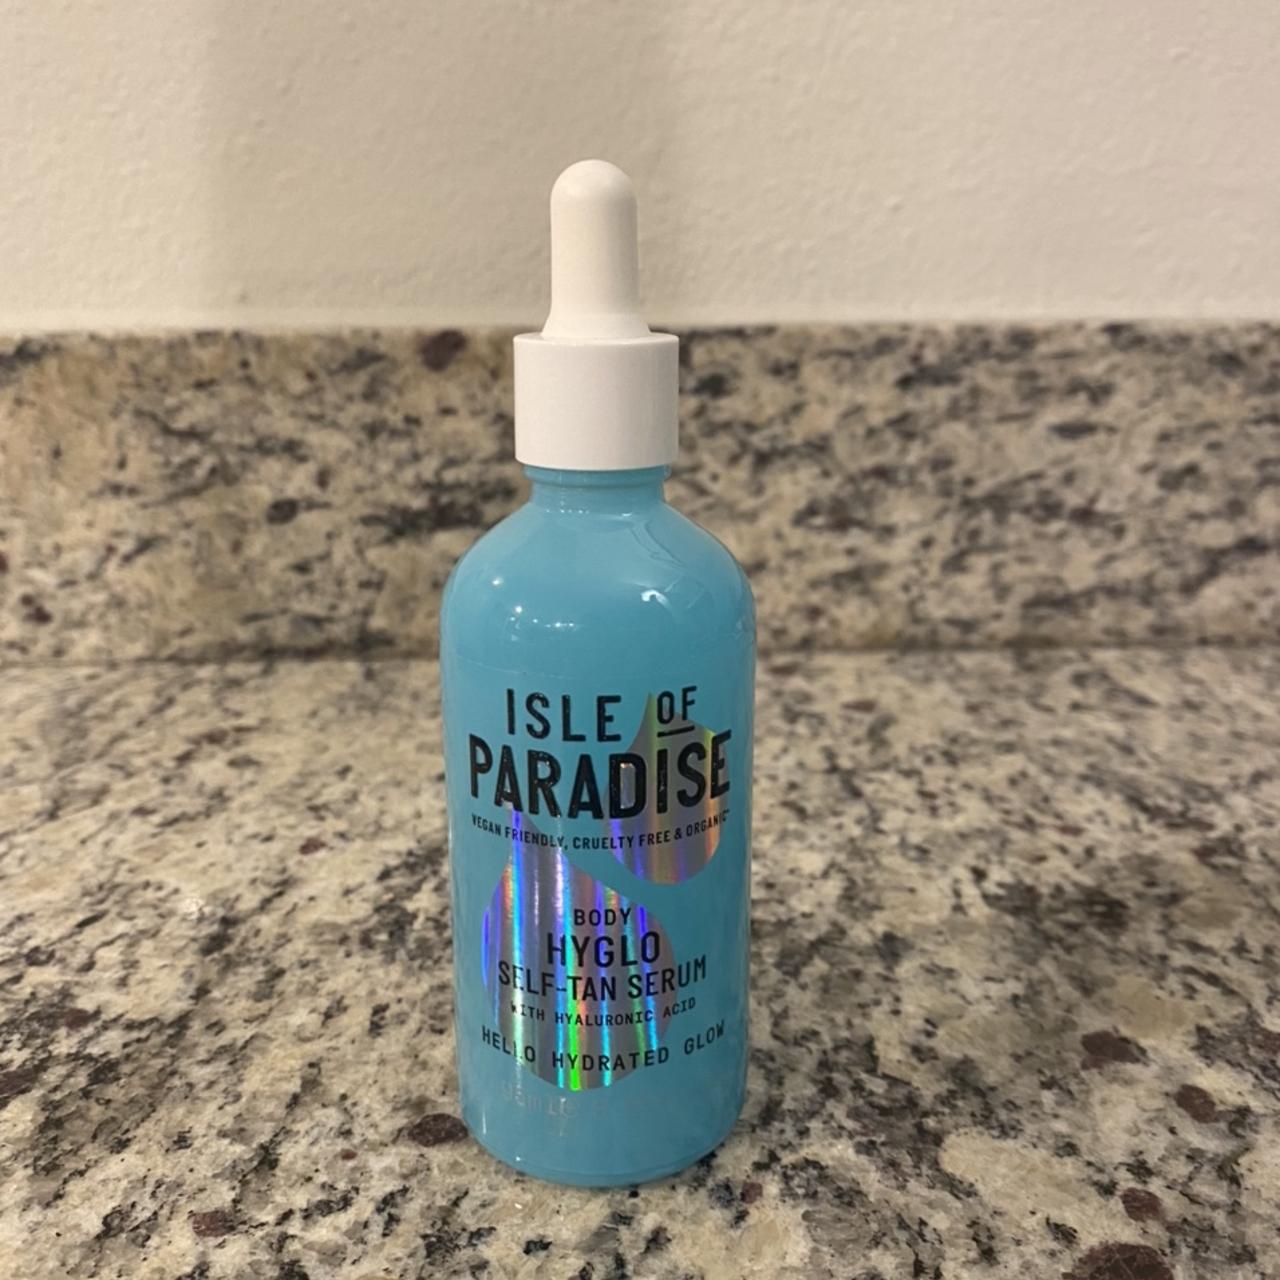 Product Image 3 - Isle of Paradise Body Hyglo